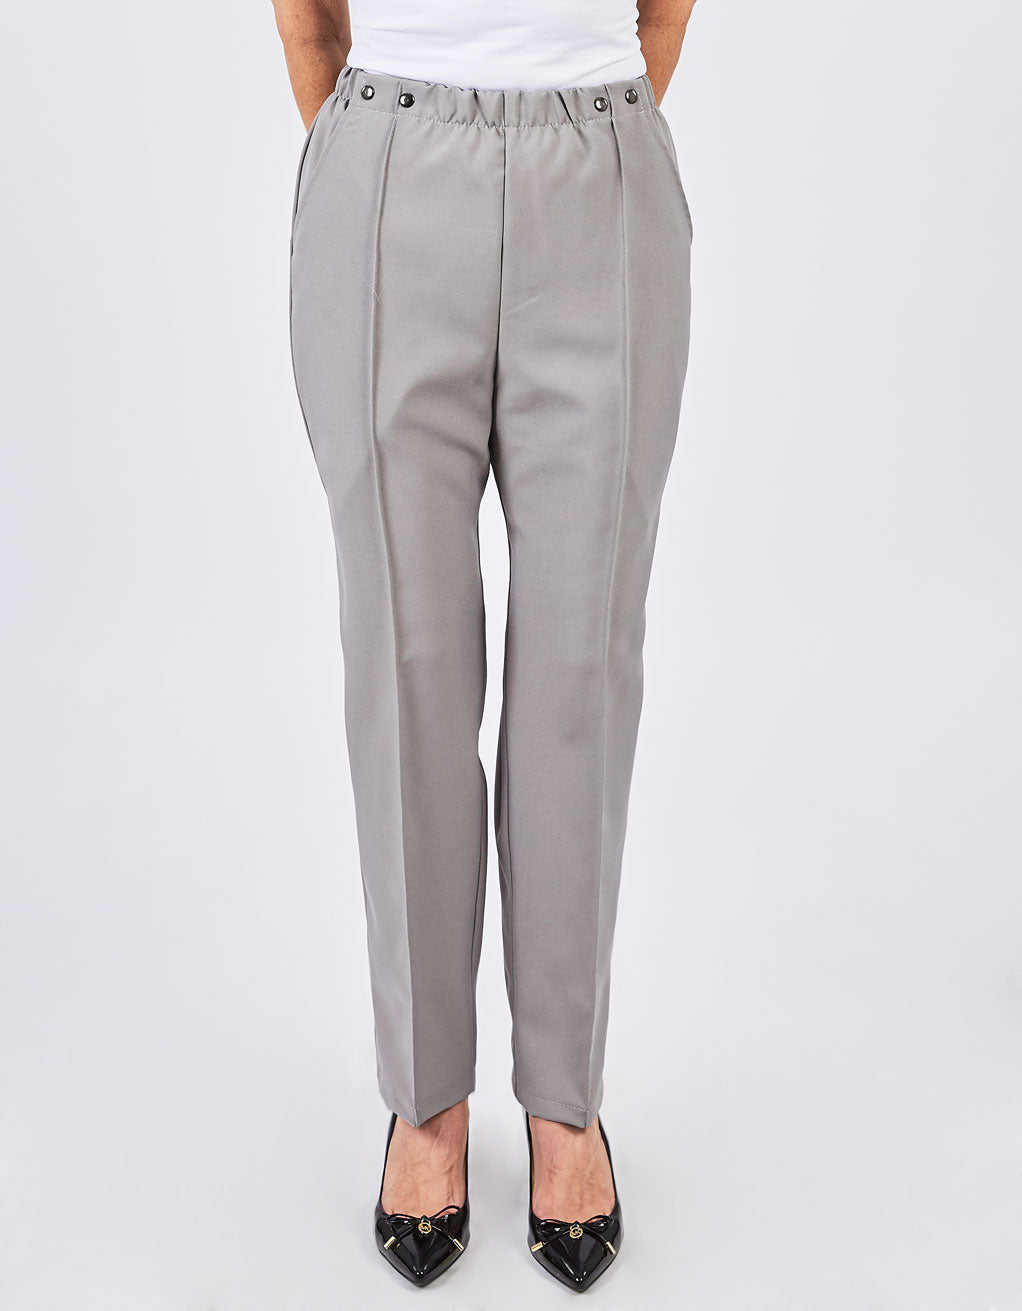 Pantalon gris perle | FP62525 | EZ